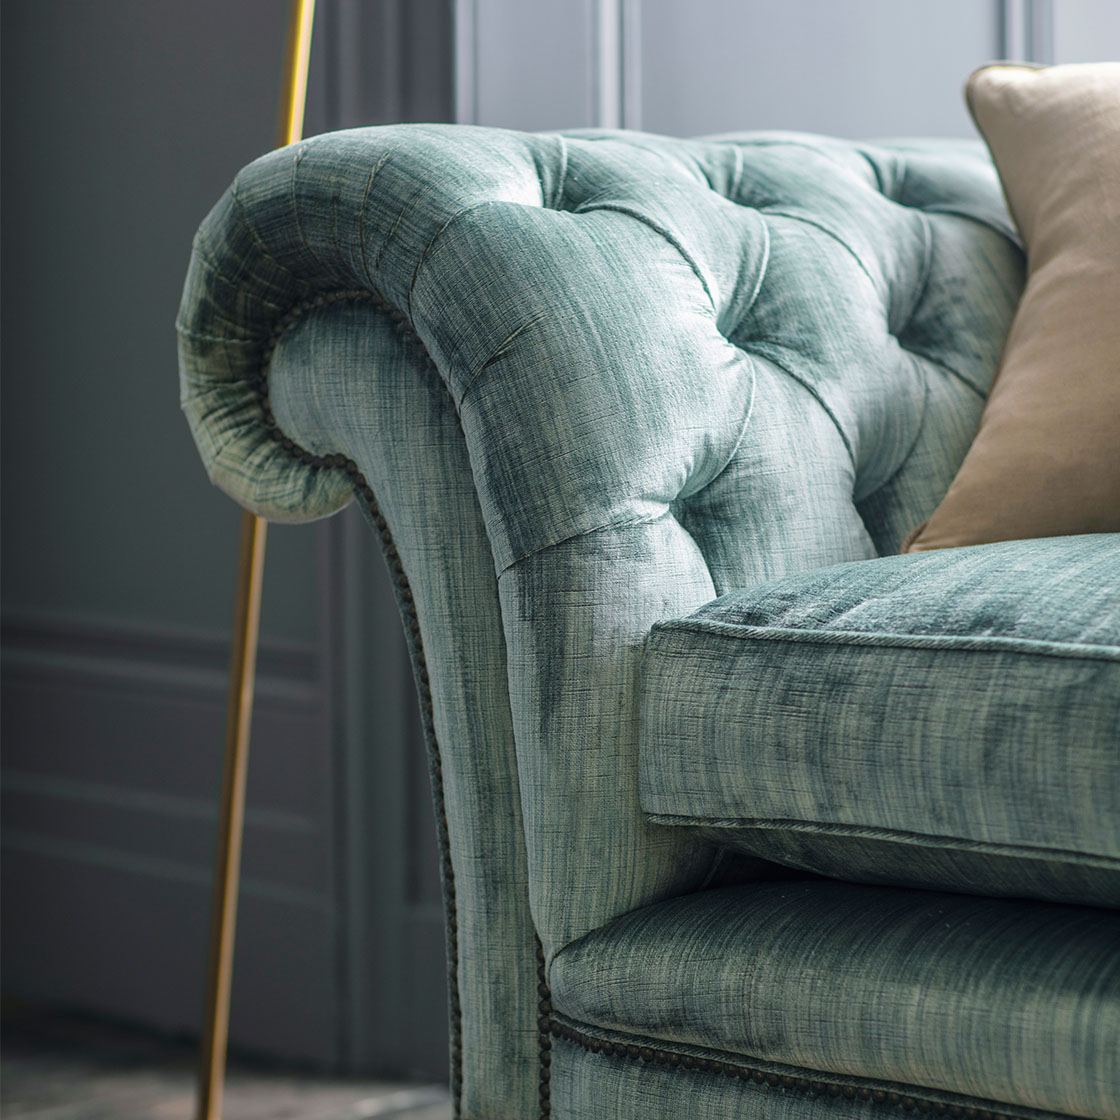 Grenville 3 seater sofa in Como silk velvet - Teal - Beaumont & Fletcher